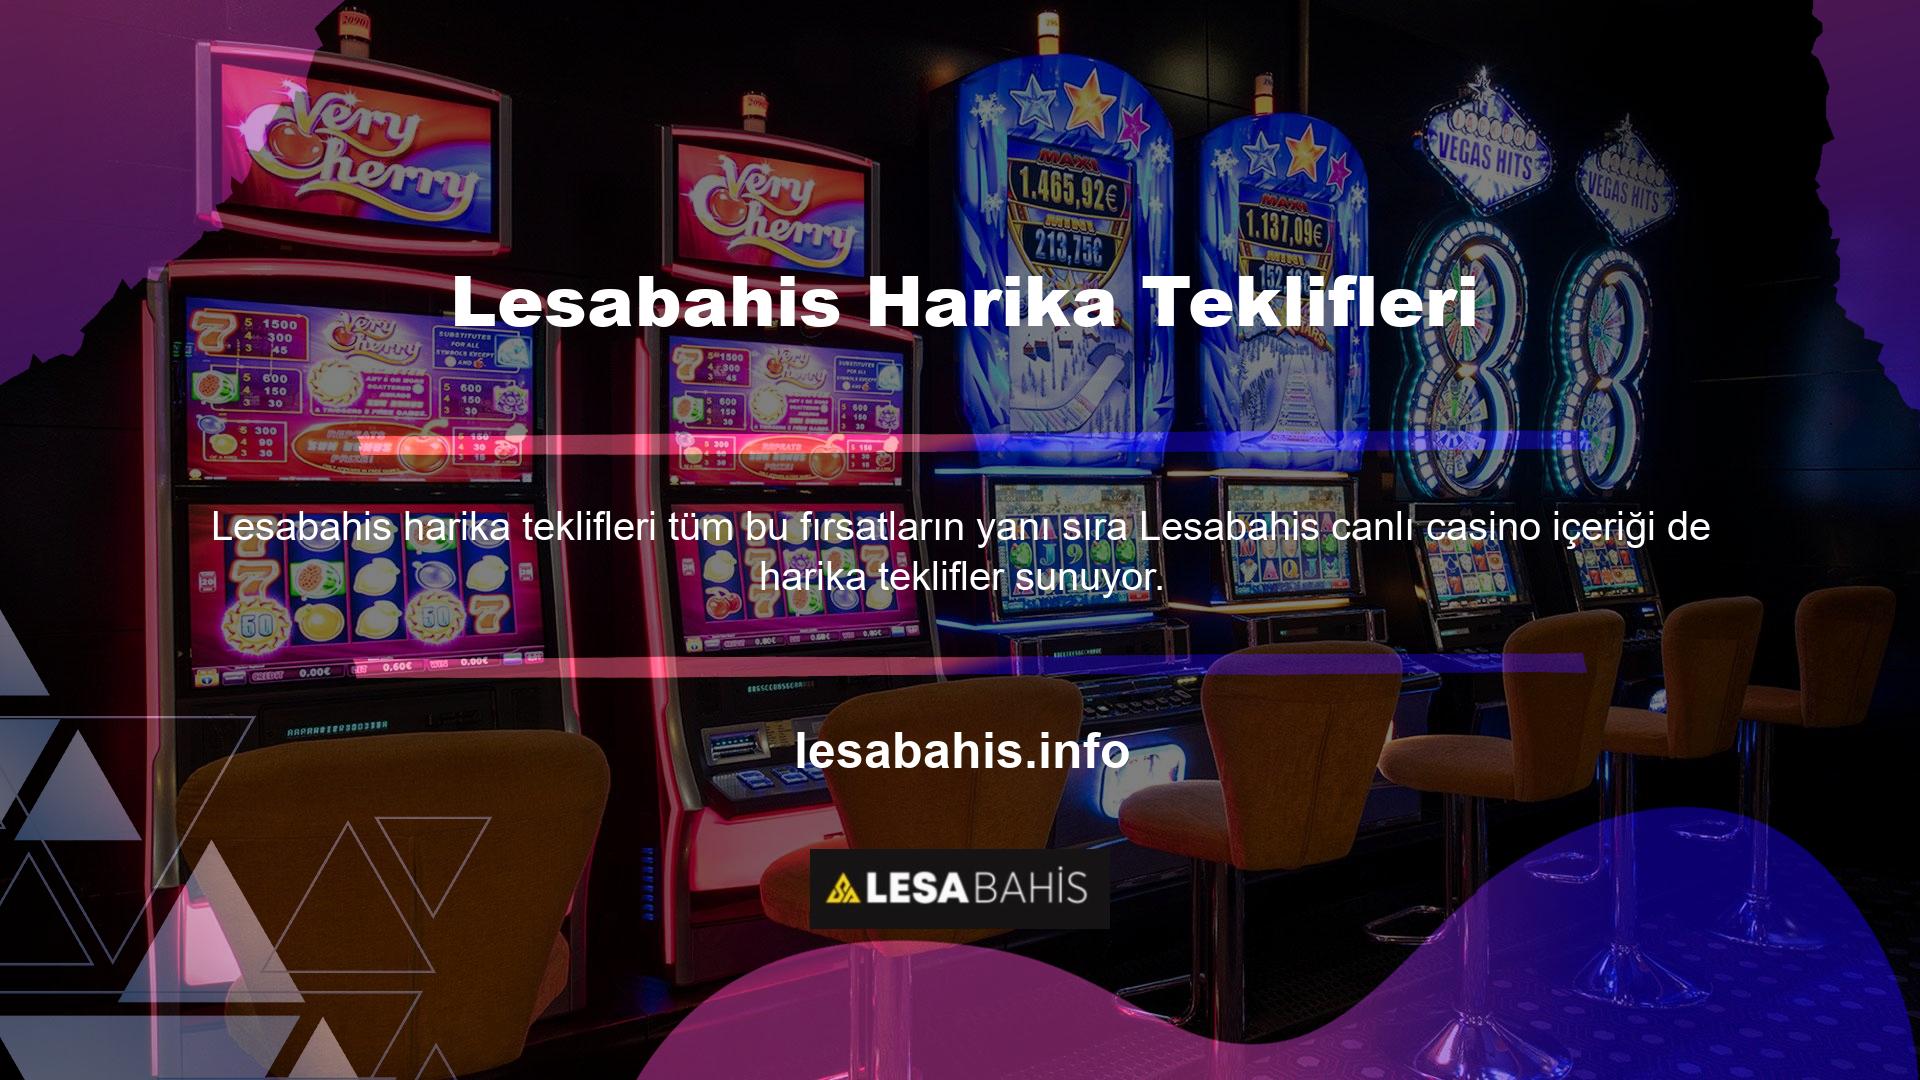 Lesabahis giriş adresi Bir Lesabahis üyesi olarak, Lesabahis oyun tutkunları, kayıt sayfasındaki ortaklık bağlantısı aracılığıyla 7/24 abonelik oluşturma fırsatına sahip olacaklar